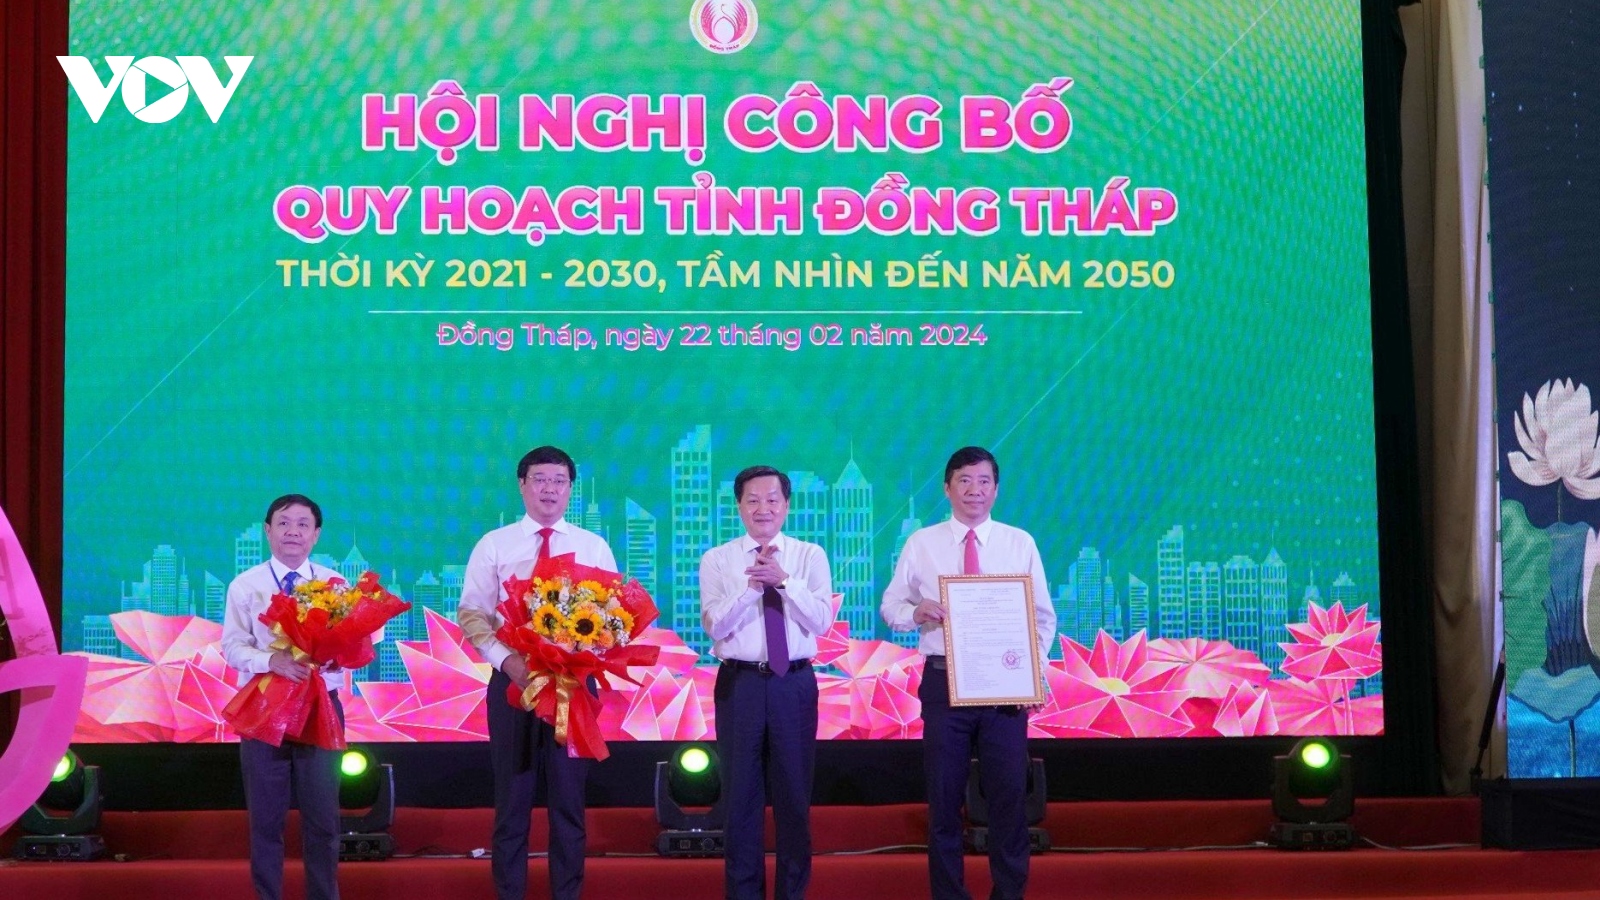 Phó Thủ tướng Lê Minh Khái dự hội nghị công bố Quy hoạch tỉnh Đồng Tháp